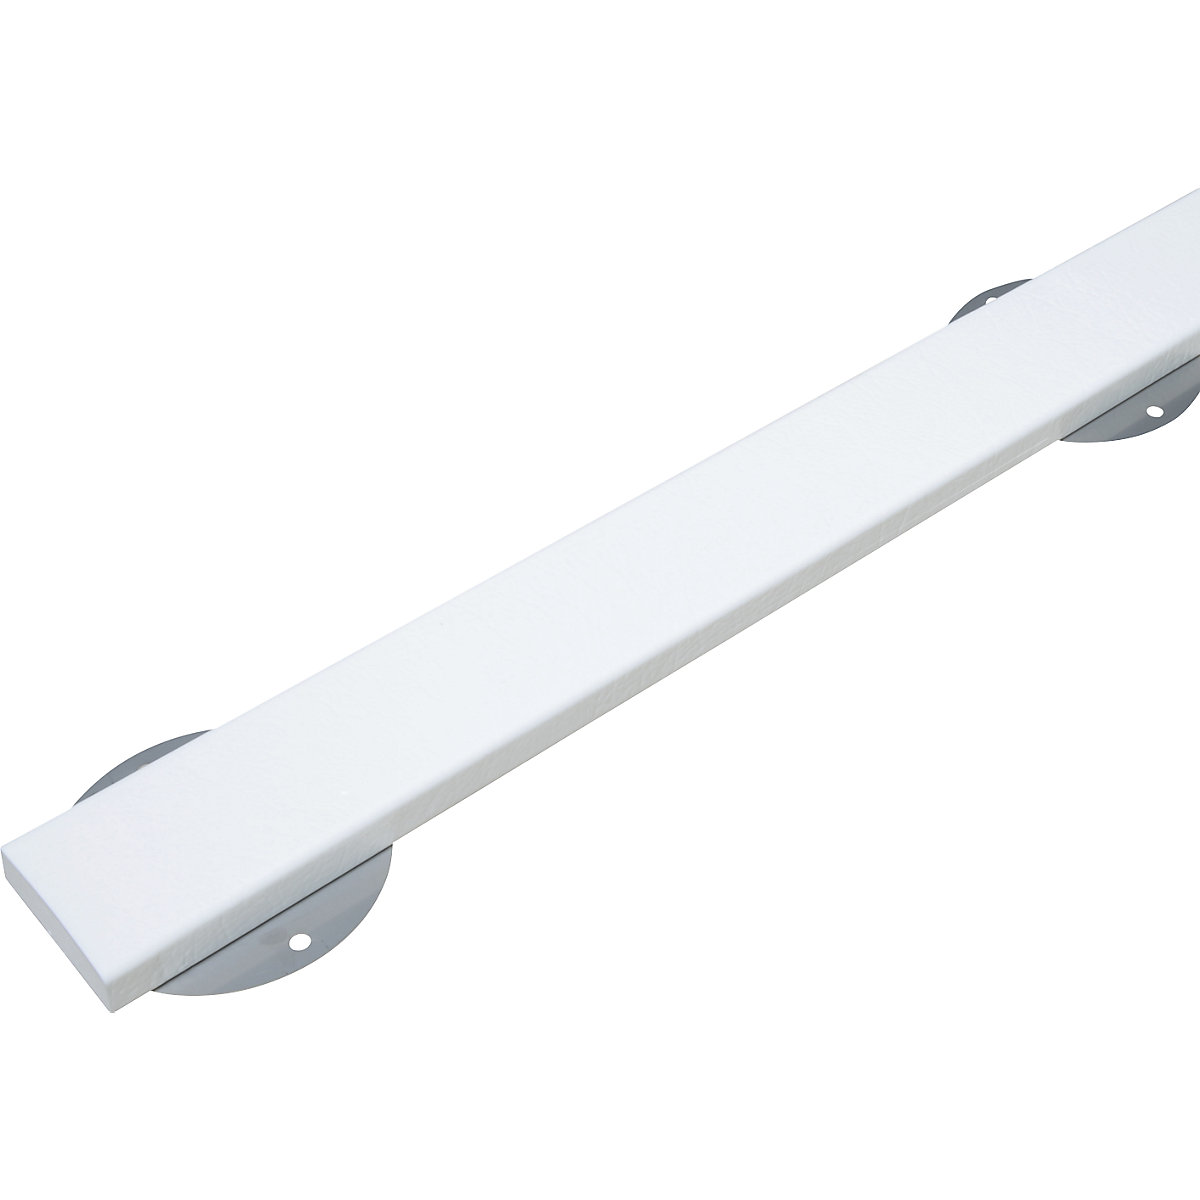 Protection des surfaces Knuffi® avec rail de montage – SHG, type S, pièce de 1 m, blanc